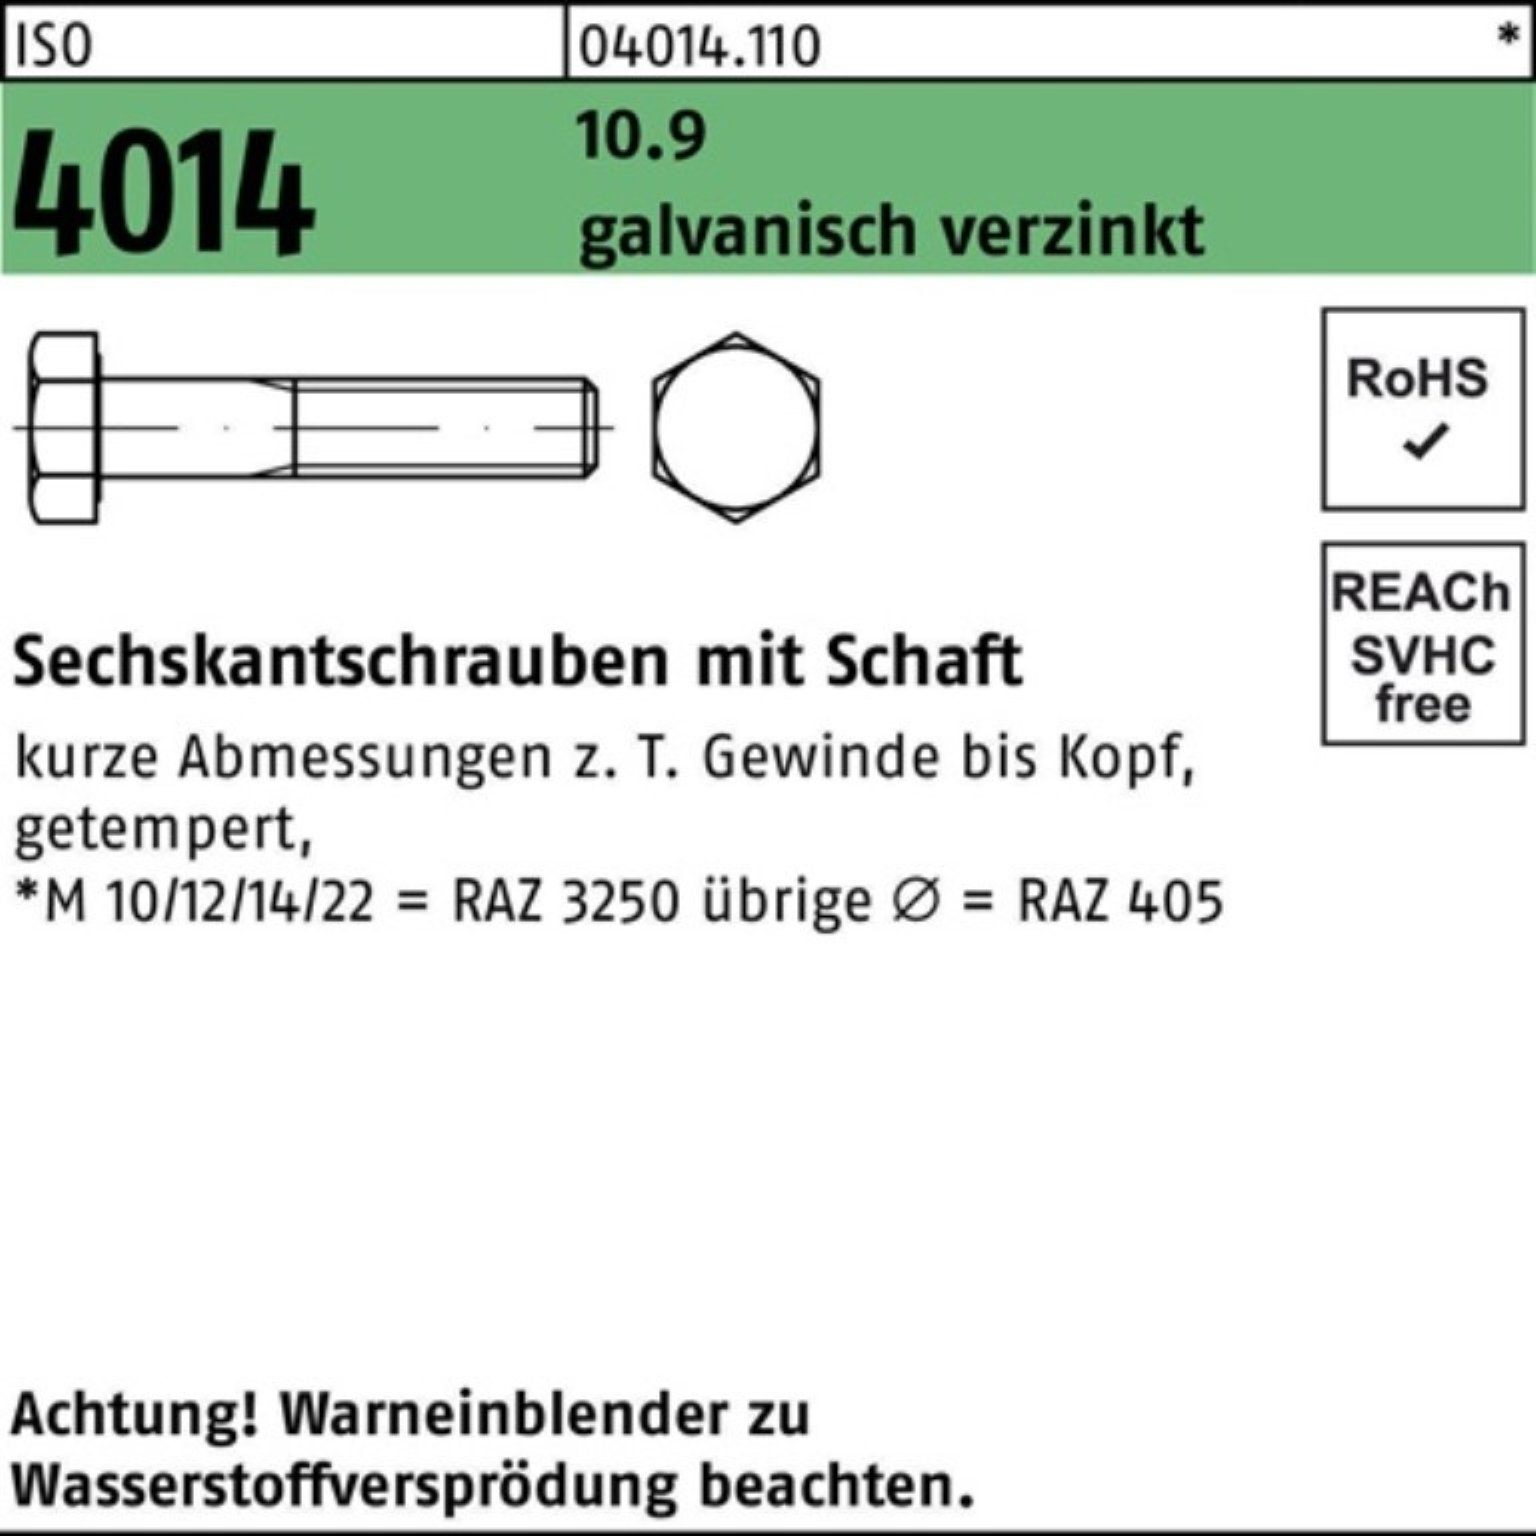 ISO Sechskantschraube galv.verz. 100 Sechskantschraube 10.9 Schaft M18x Bufab 100er 4014 Pack